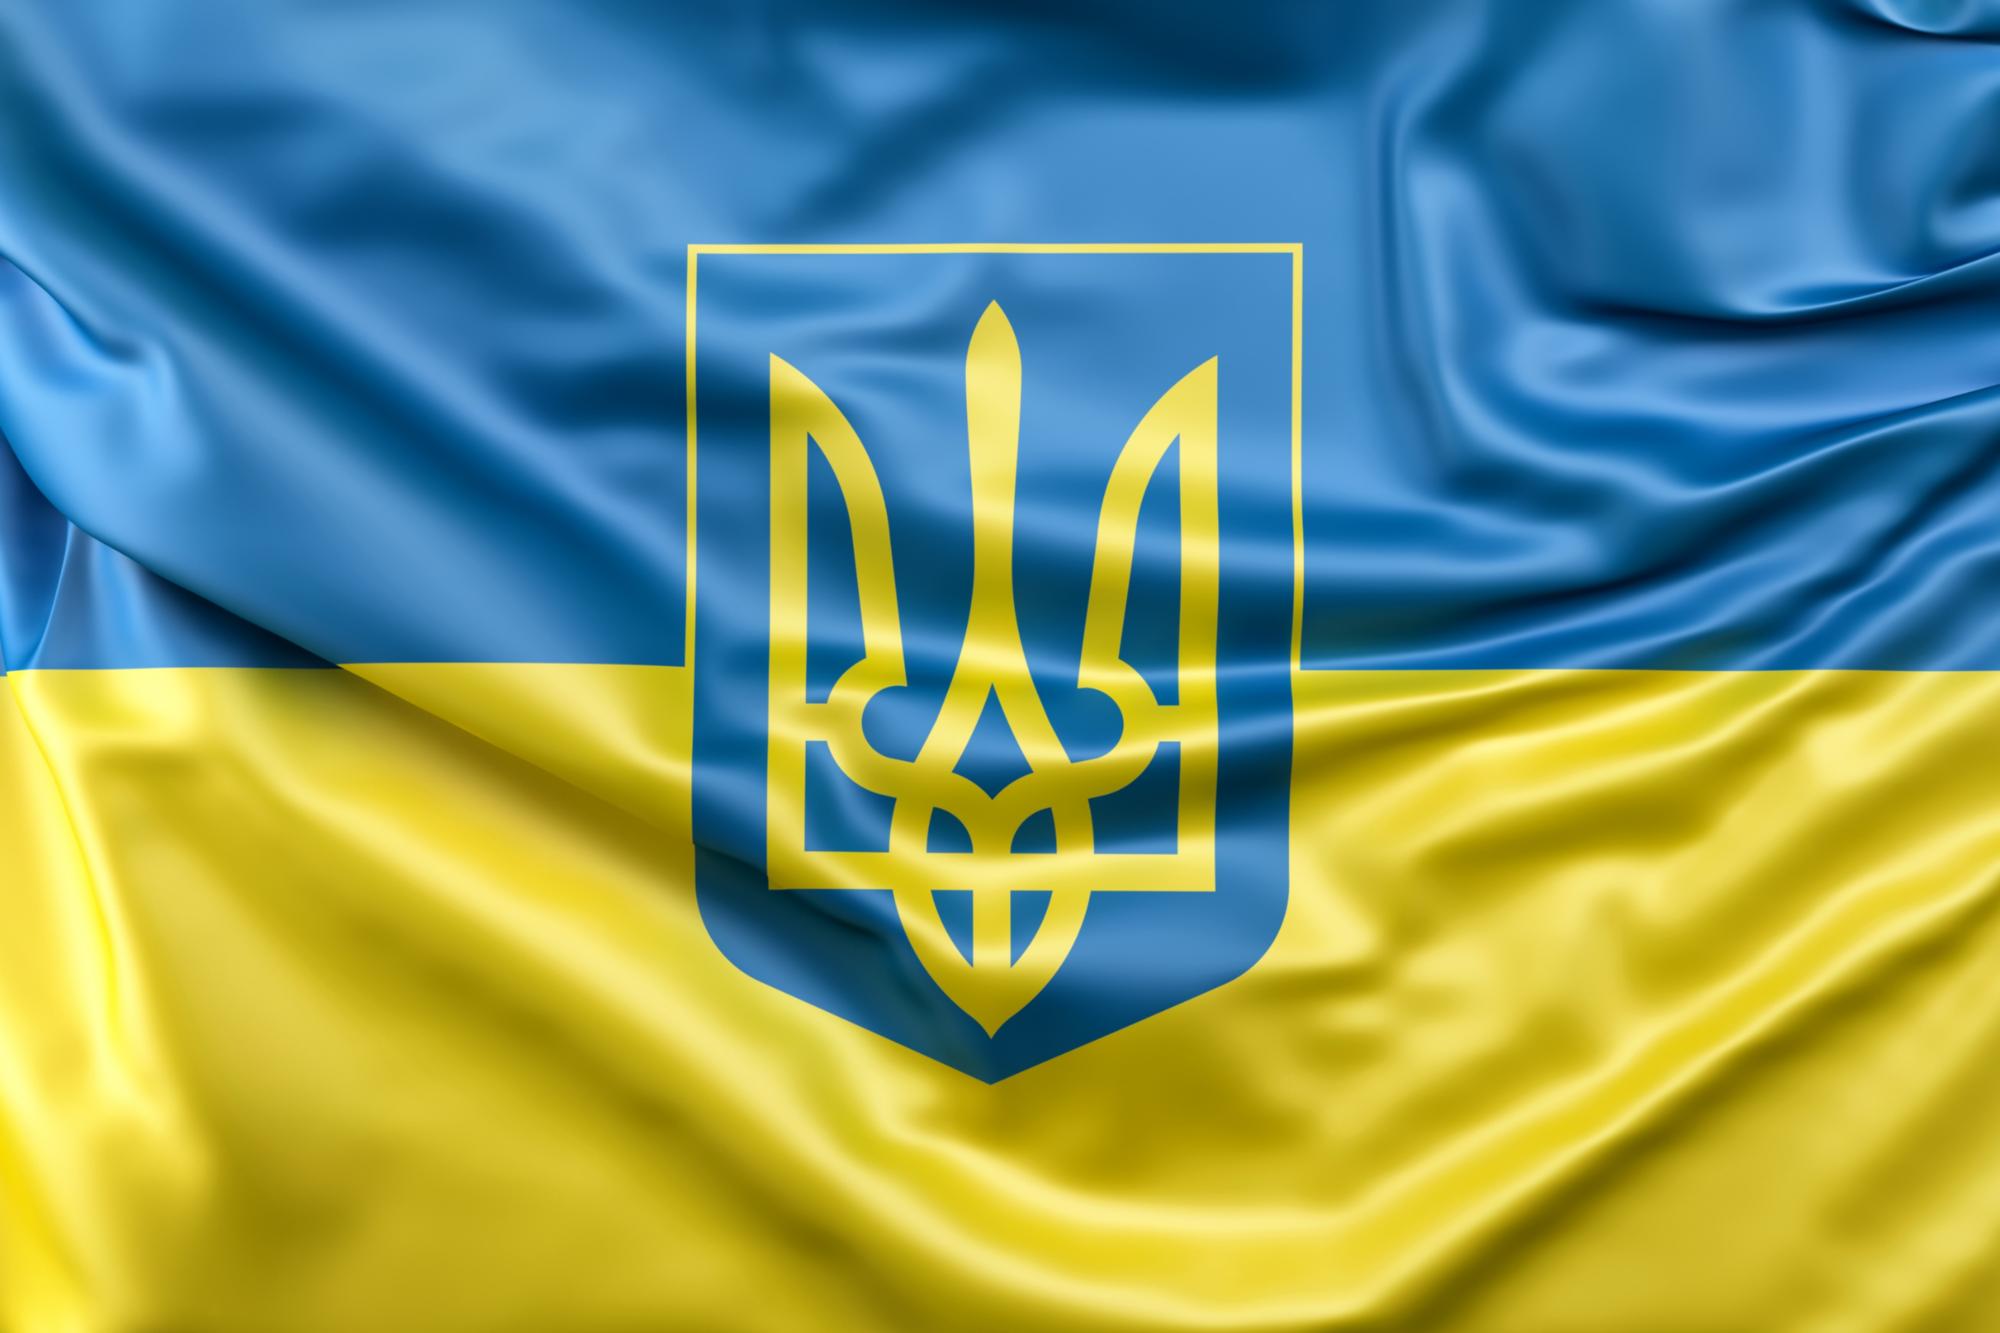 Flagge der Ukraine mit Wappen